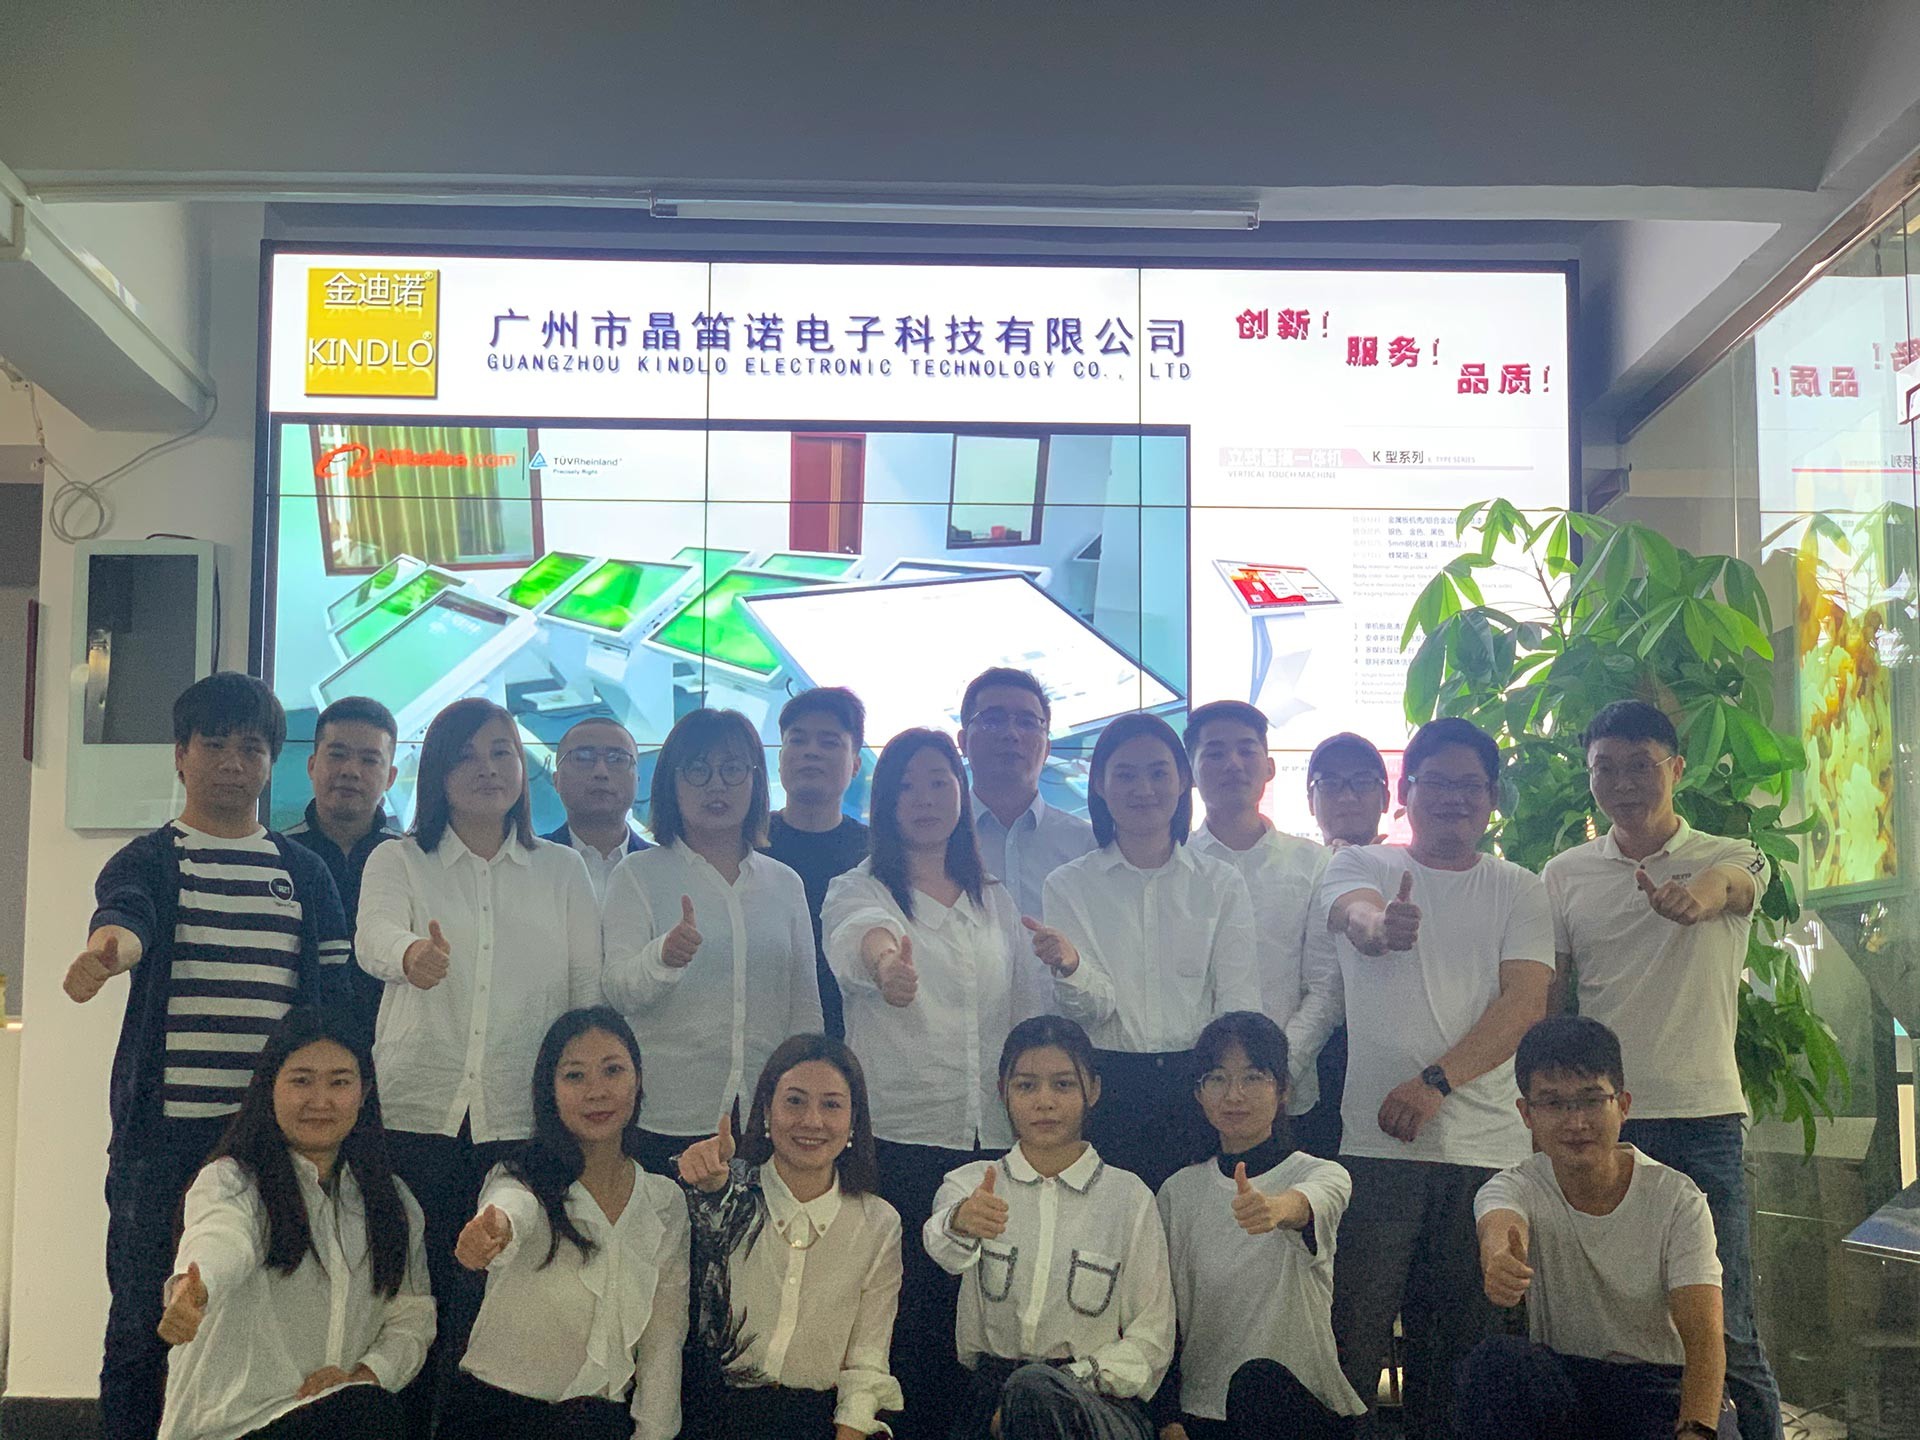 중국 Guangzhou Jingdinuo Electronic Technology Co., Ltd. 회사 프로필